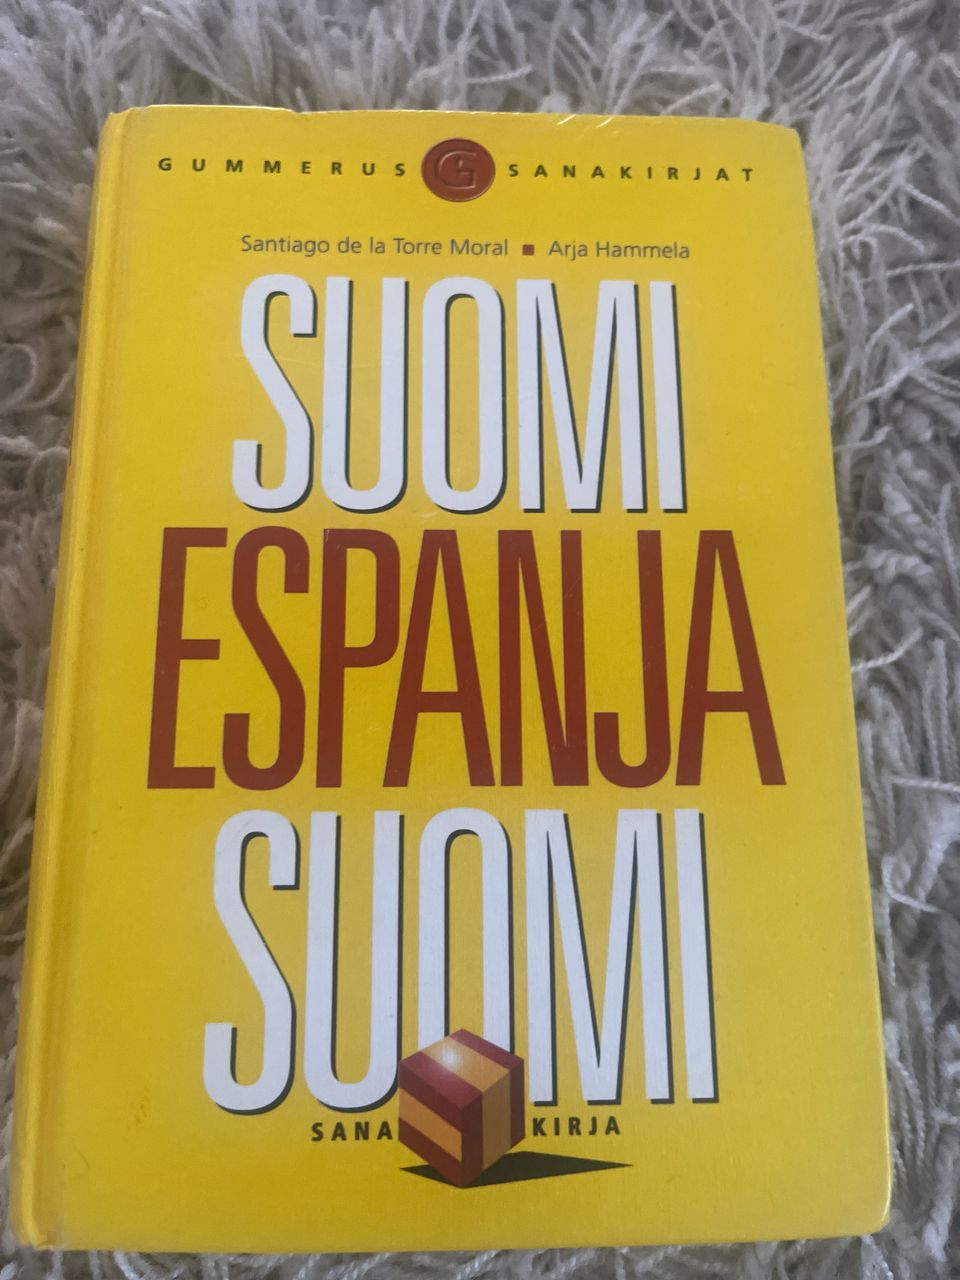 Suomi-espanja-suomi -sanakirja